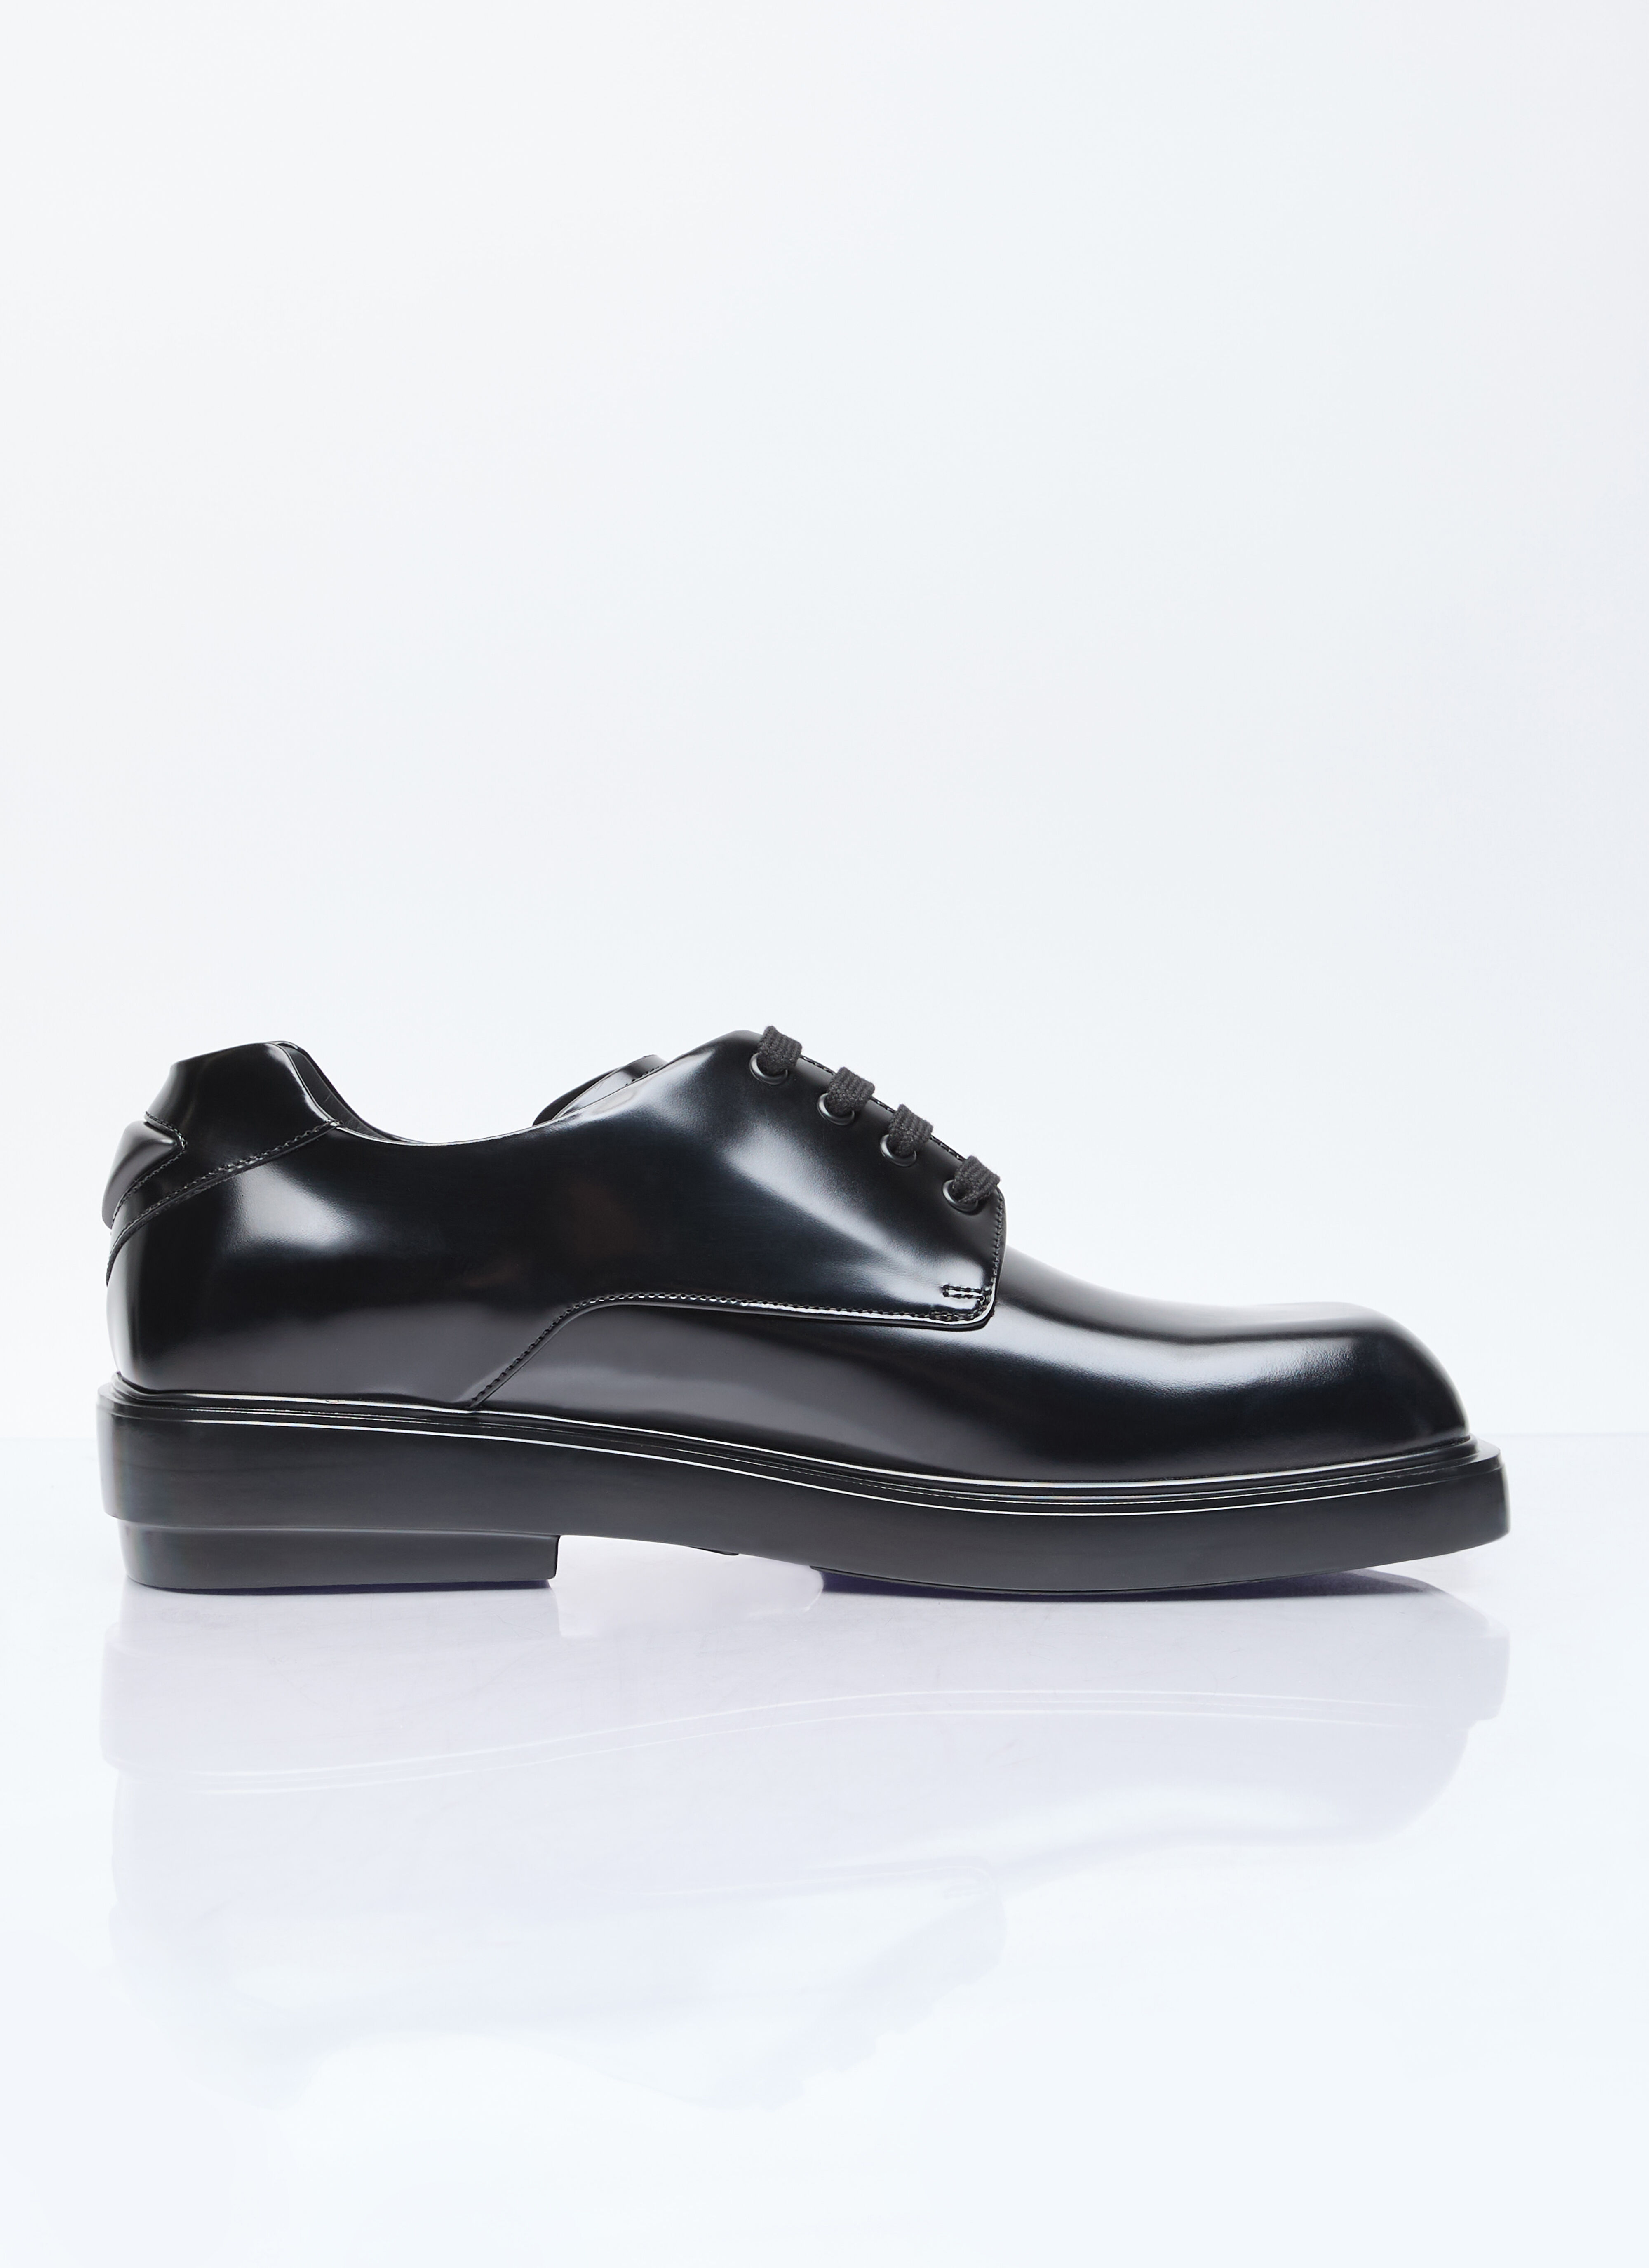 Comme des Garçons Homme Plus Square Toe Derby Shoes Black hpl0156006